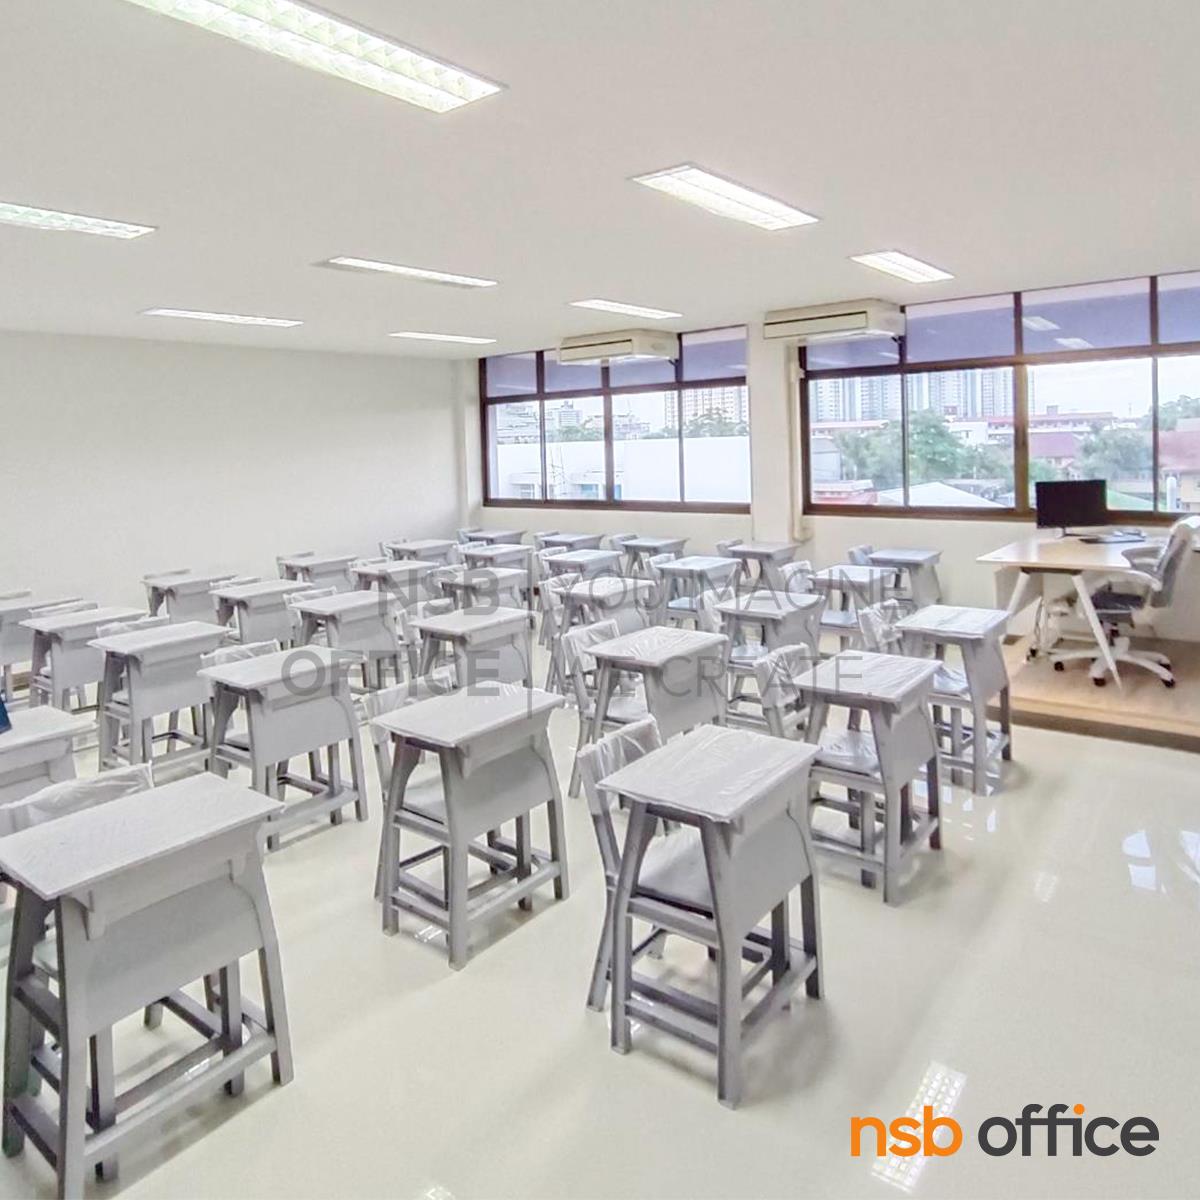 ชุดโต๊ะและเก้าอี้นักเรียน รุ่น Apricot (แอปปิคอต)  ระดับชั้นมัธยม ขาพลาสติก